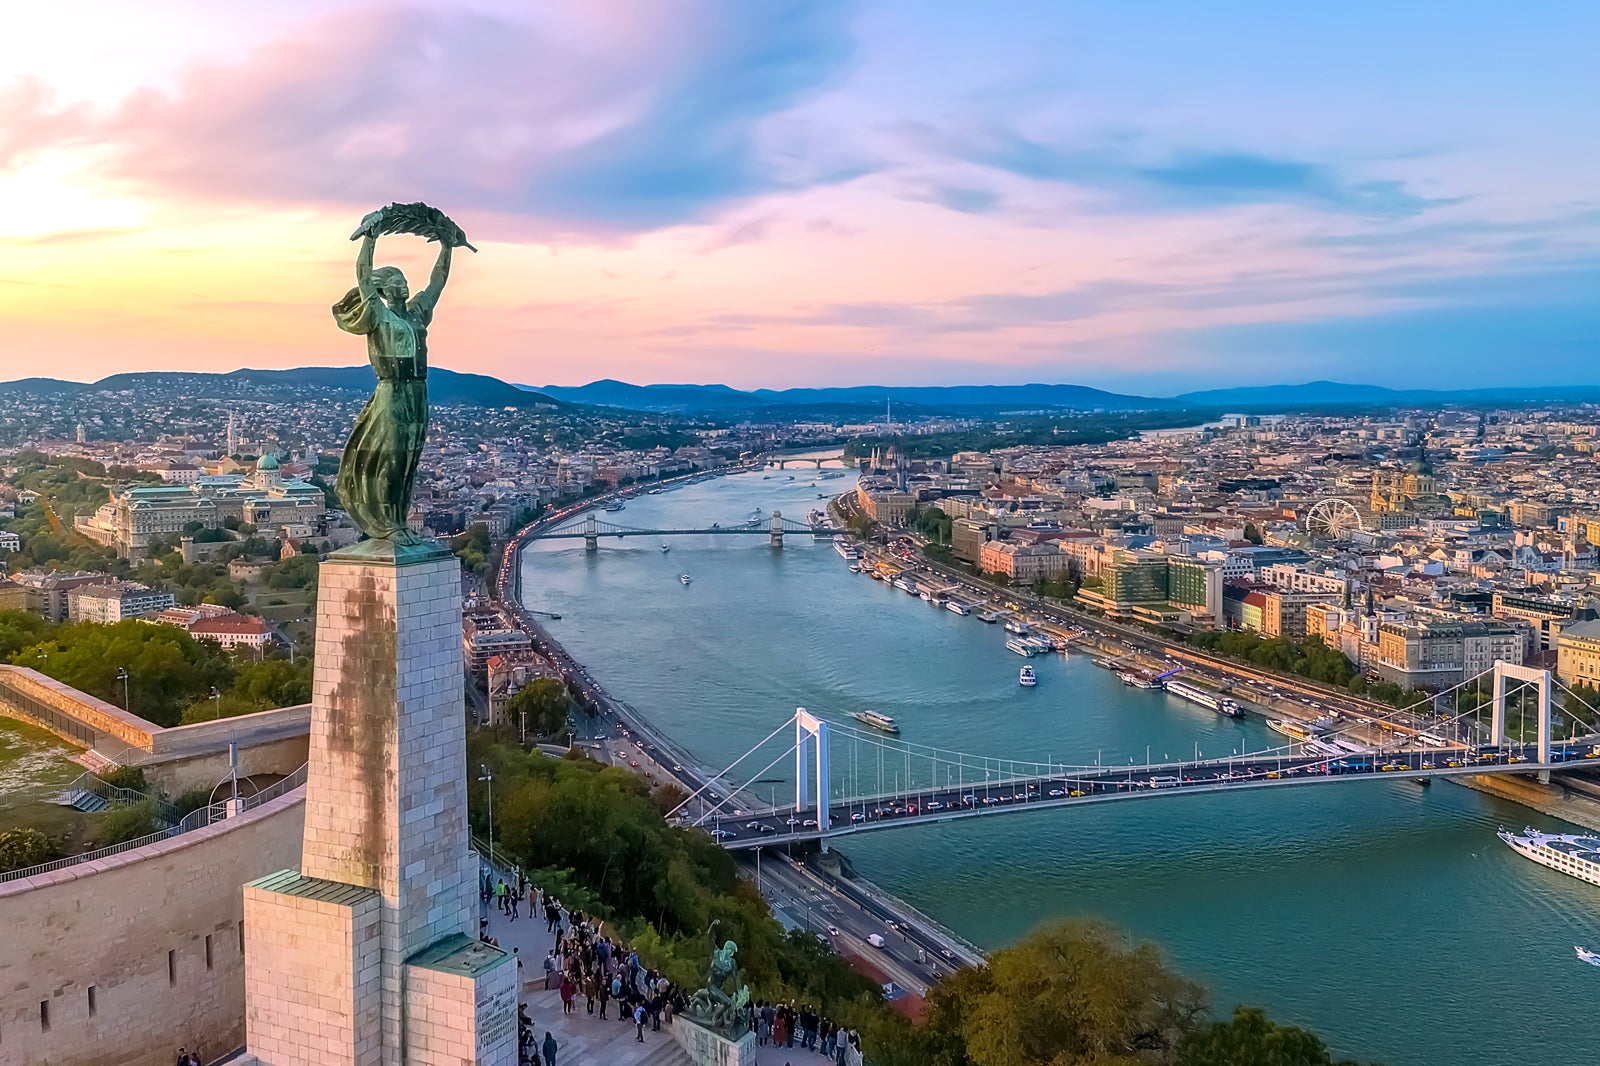 Daftar Kota Paling Indah dan Cantik di Hungaria